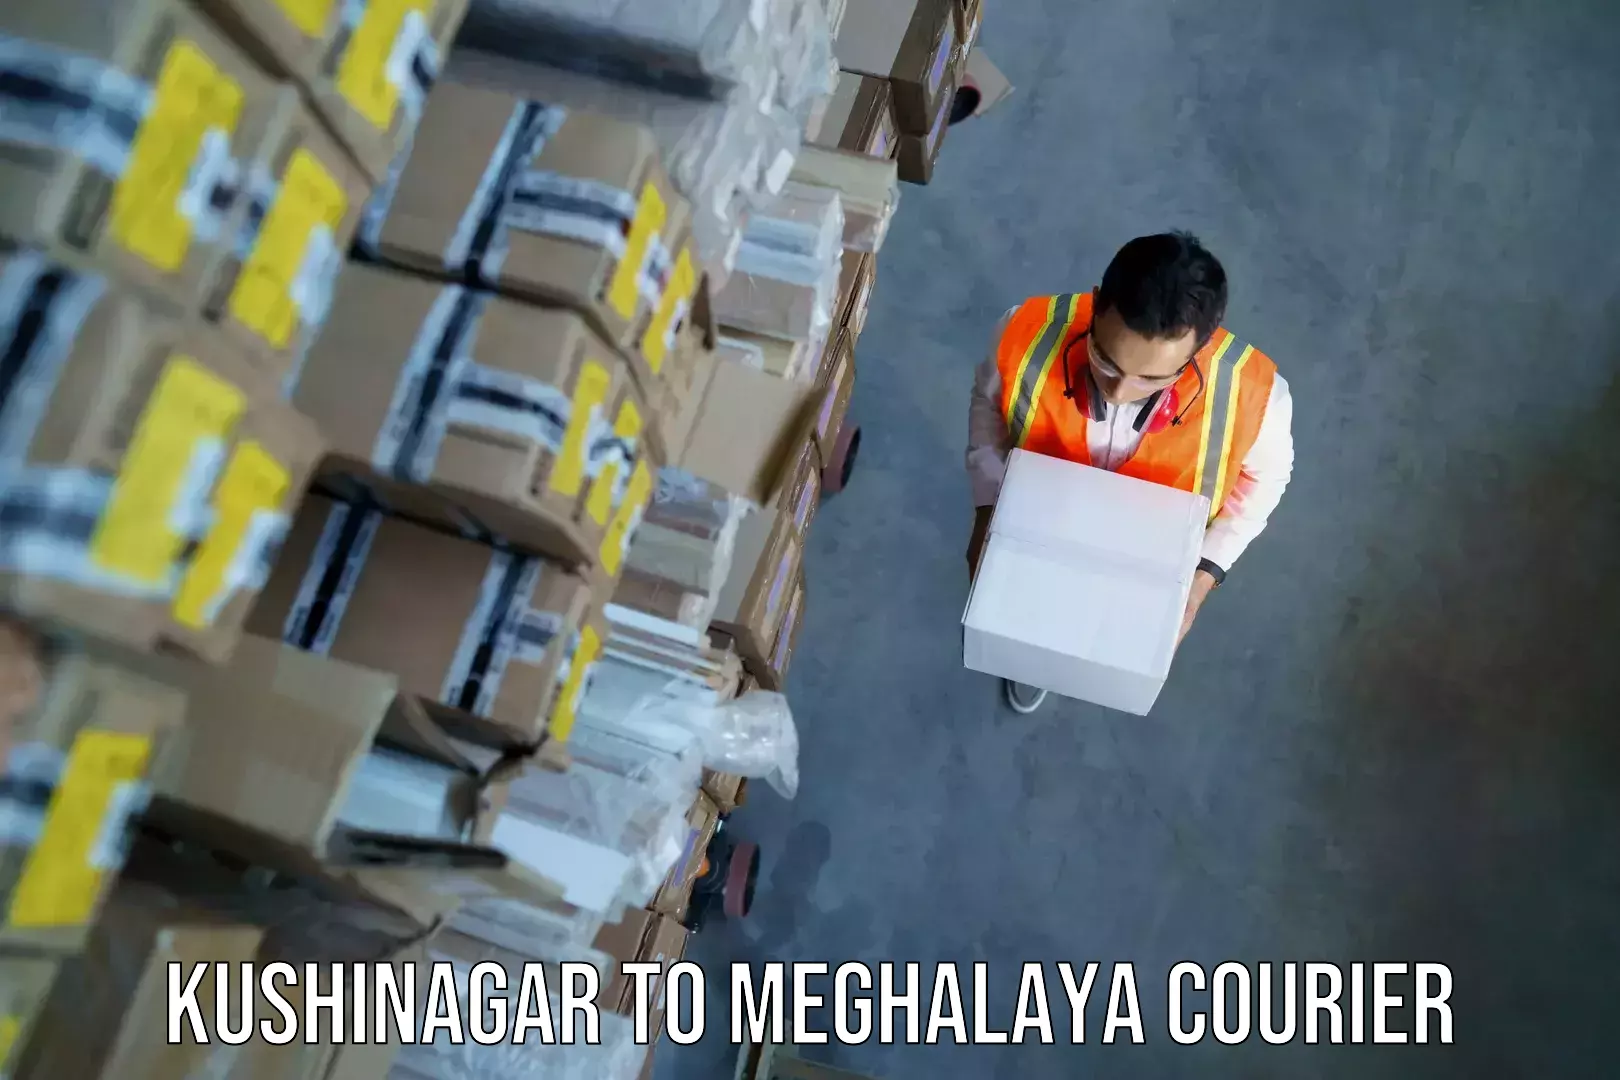 Baggage shipping calculator Kushinagar to Meghalaya